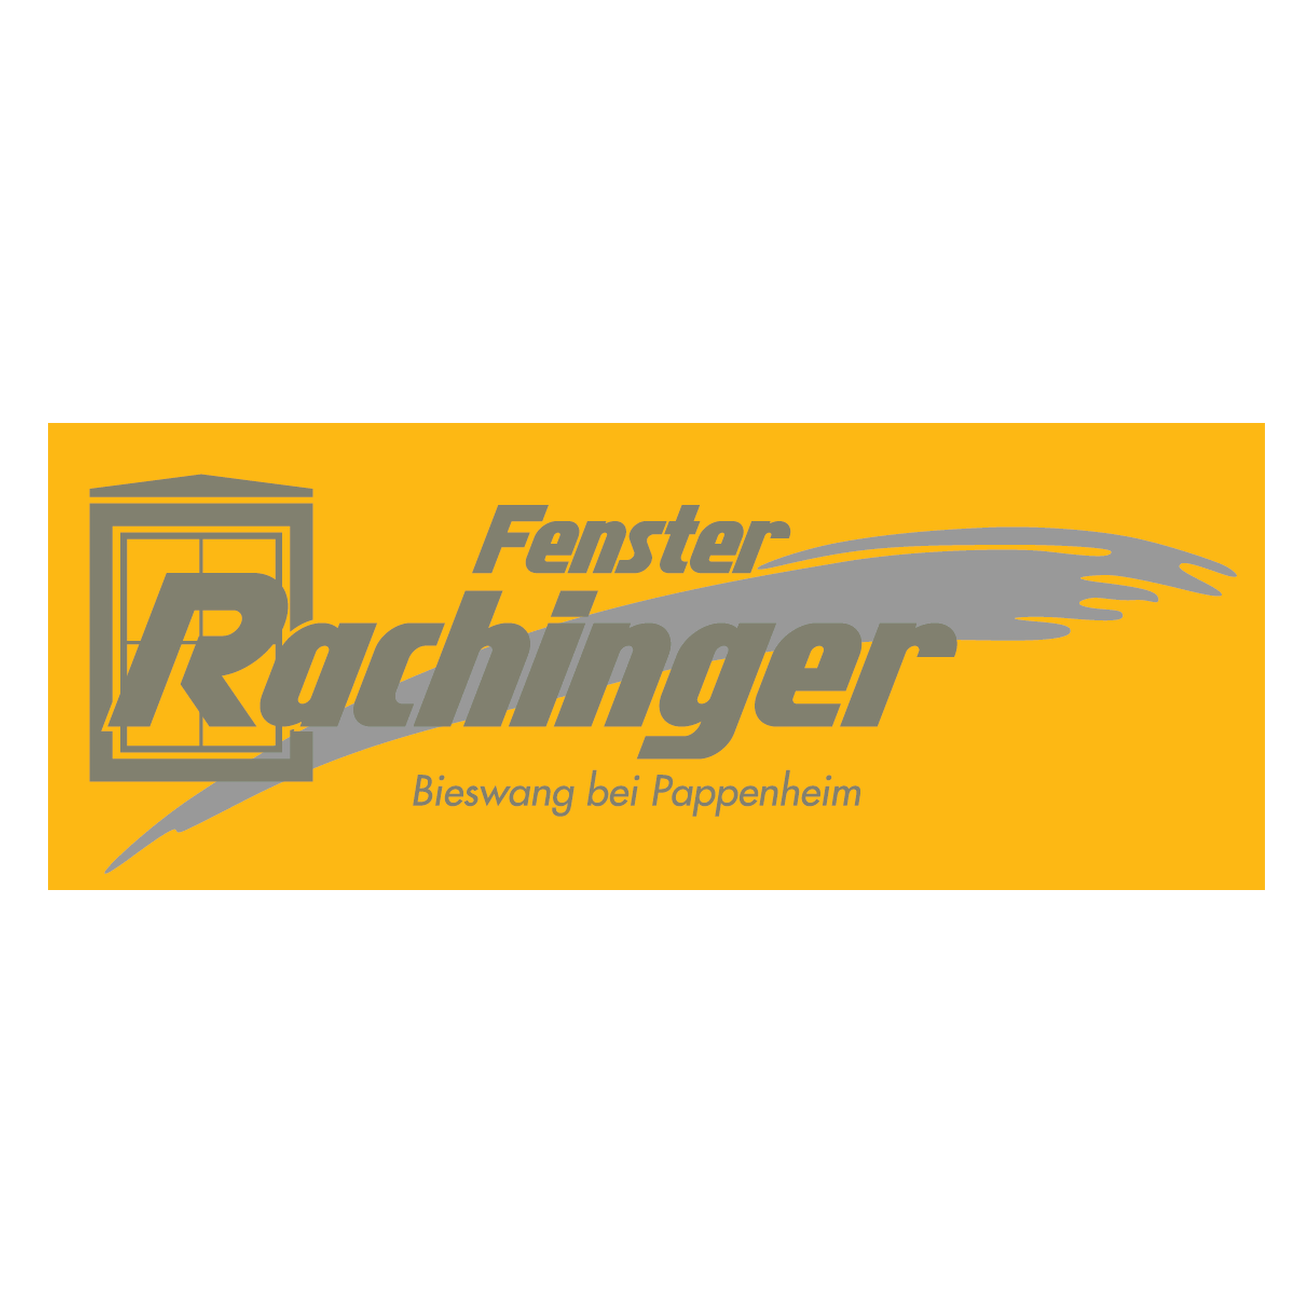 Rachinger